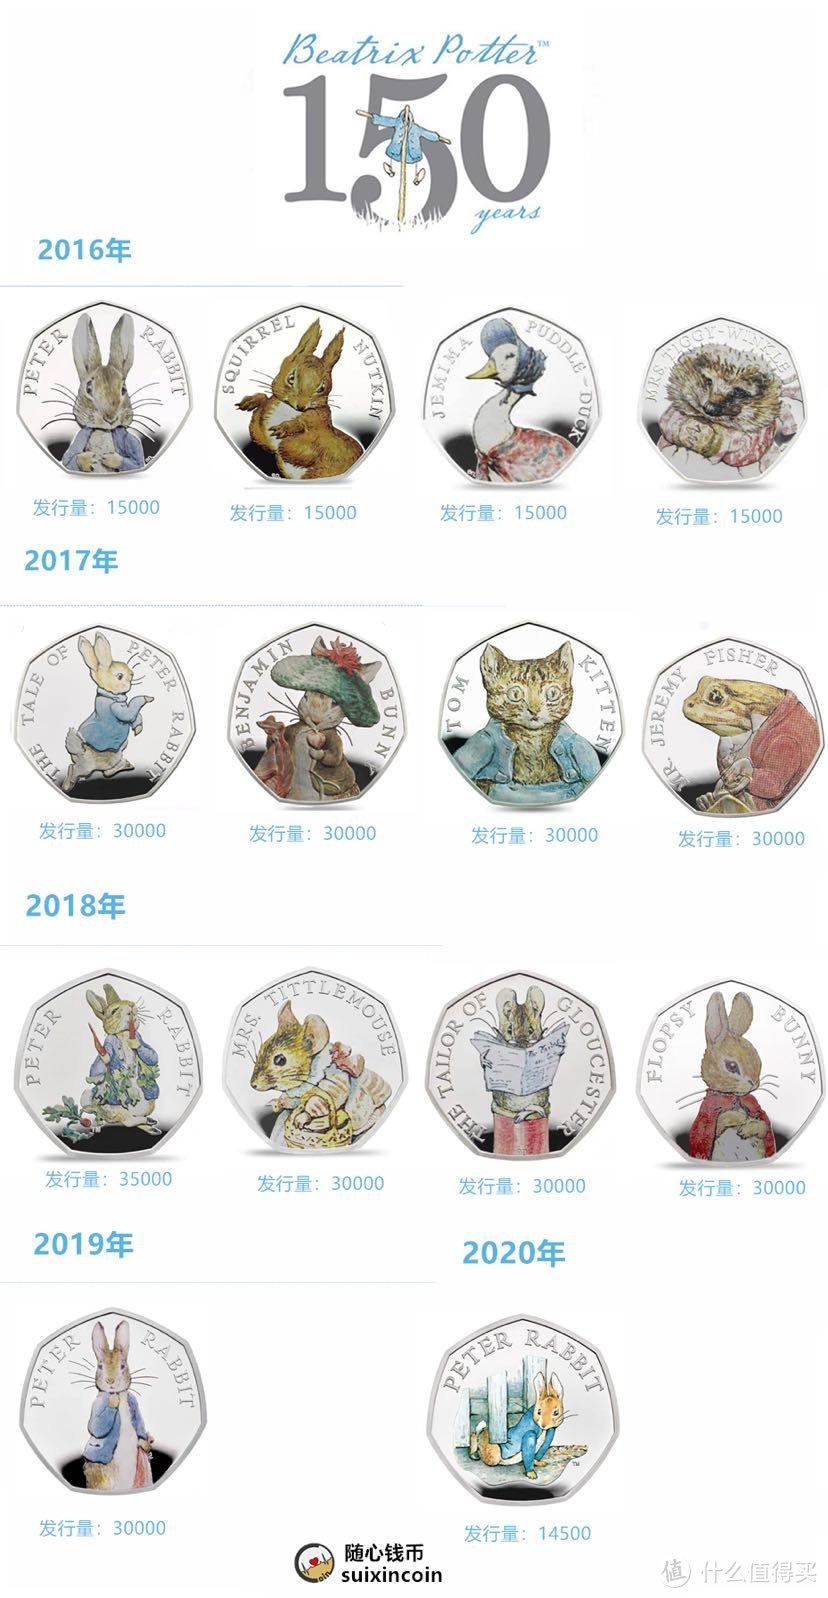 【新币赏析】2020年英国发行彼得兔系列钱币赏析【最后一枚】